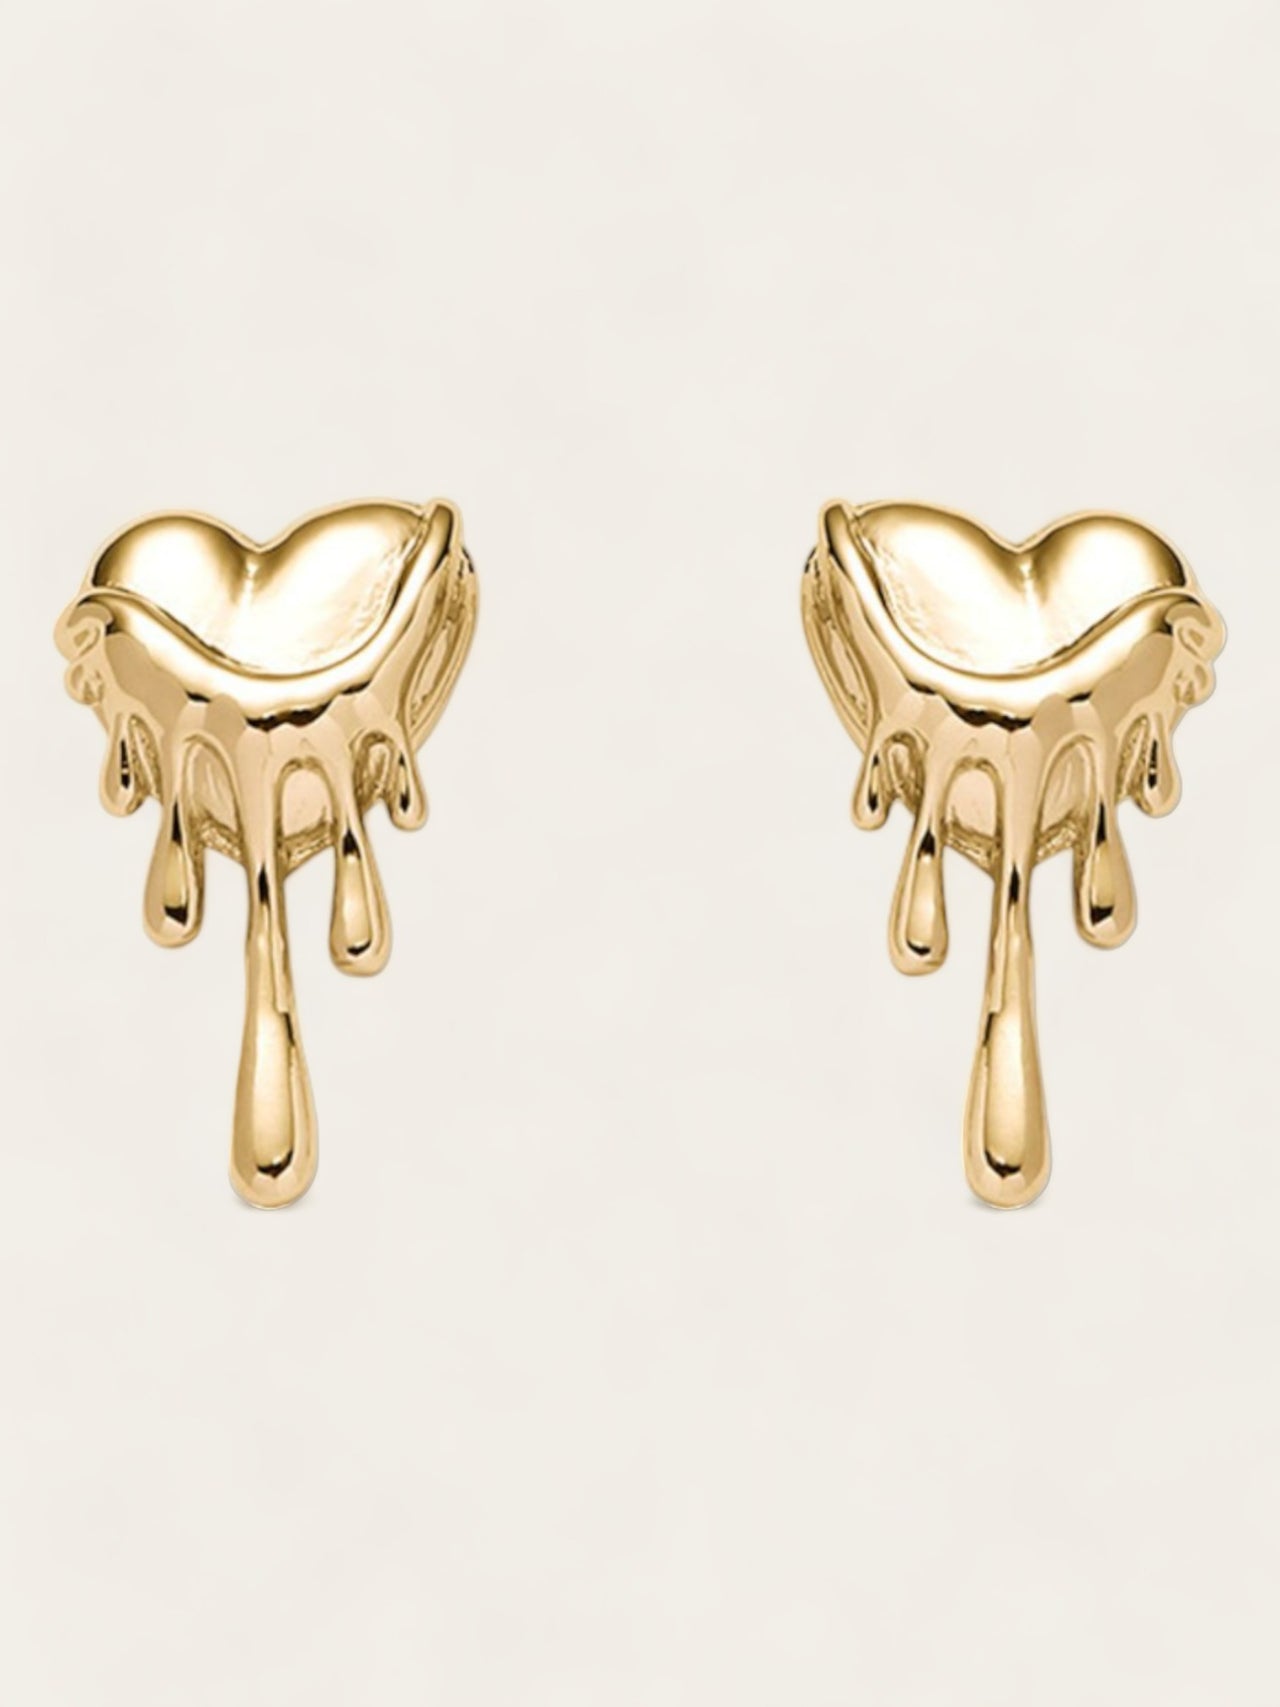 Dripping Heart Earrings - Gold